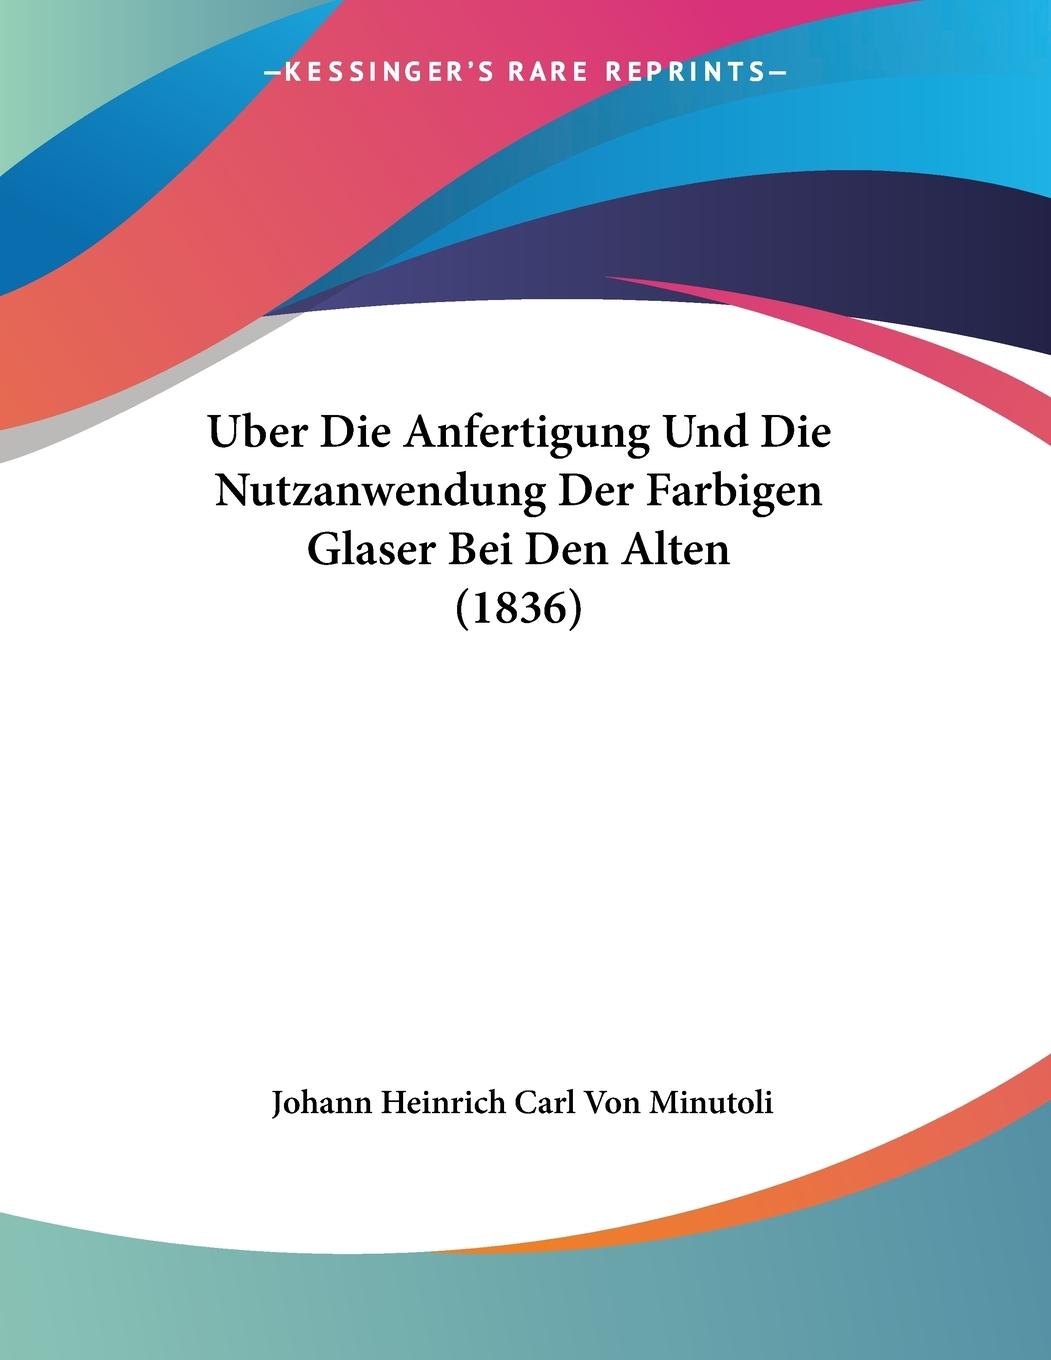 Uber Die Anfertigung Und Die Nutzanwendung Der Farbigen Glaser Bei Den Alten (1836) - Minutoli, Johann Heinrich Carl Von